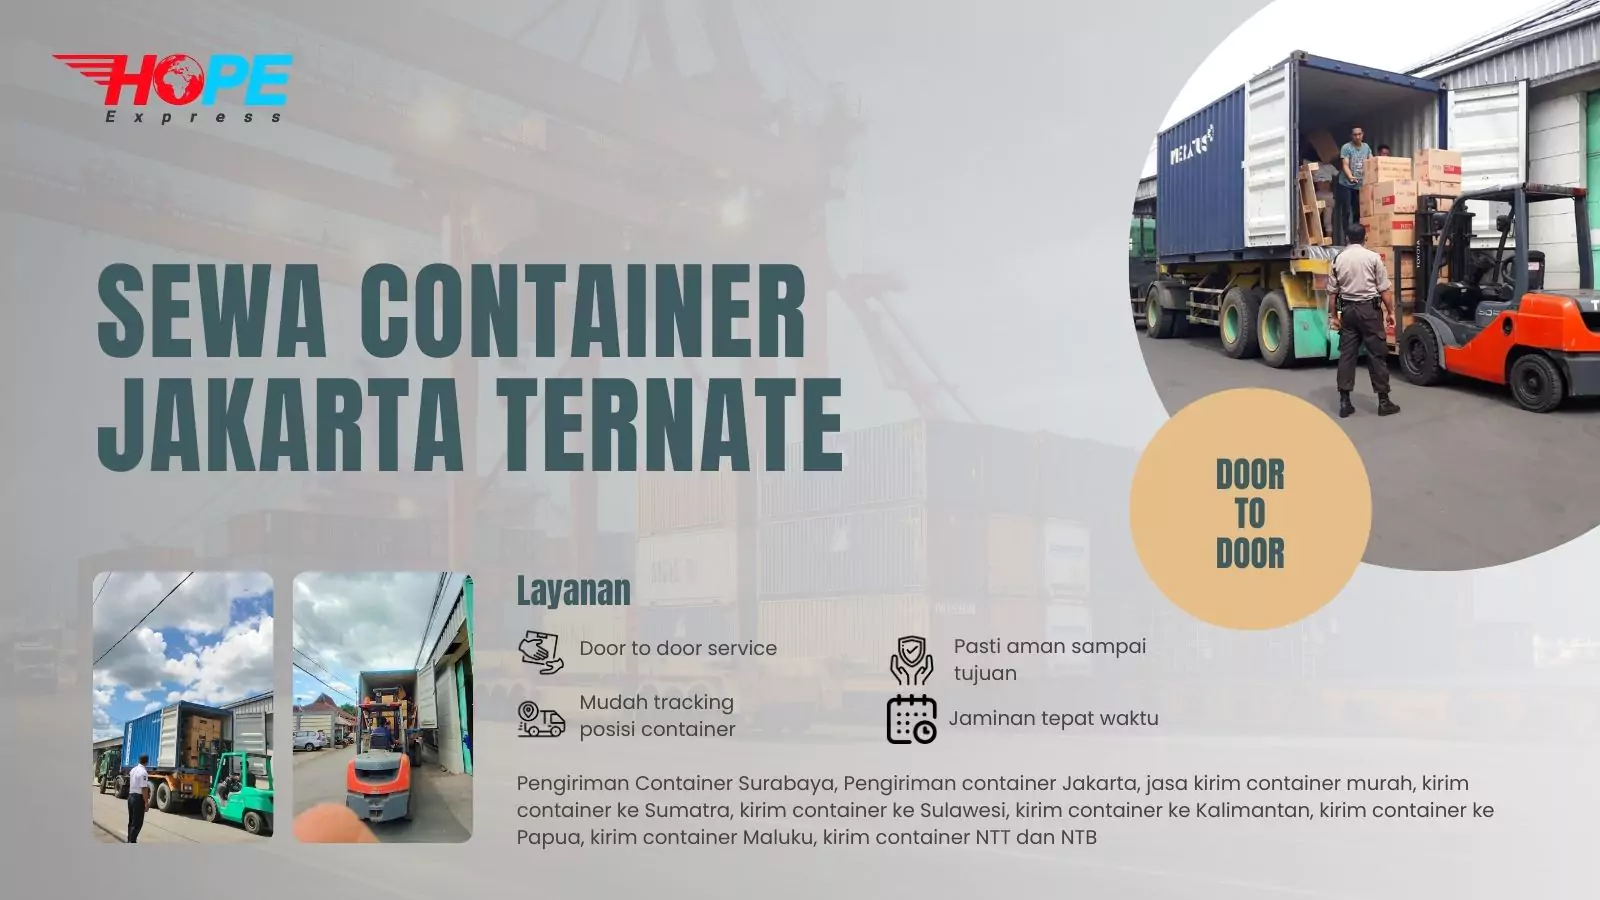 Sewa Container Jakarta Ternate